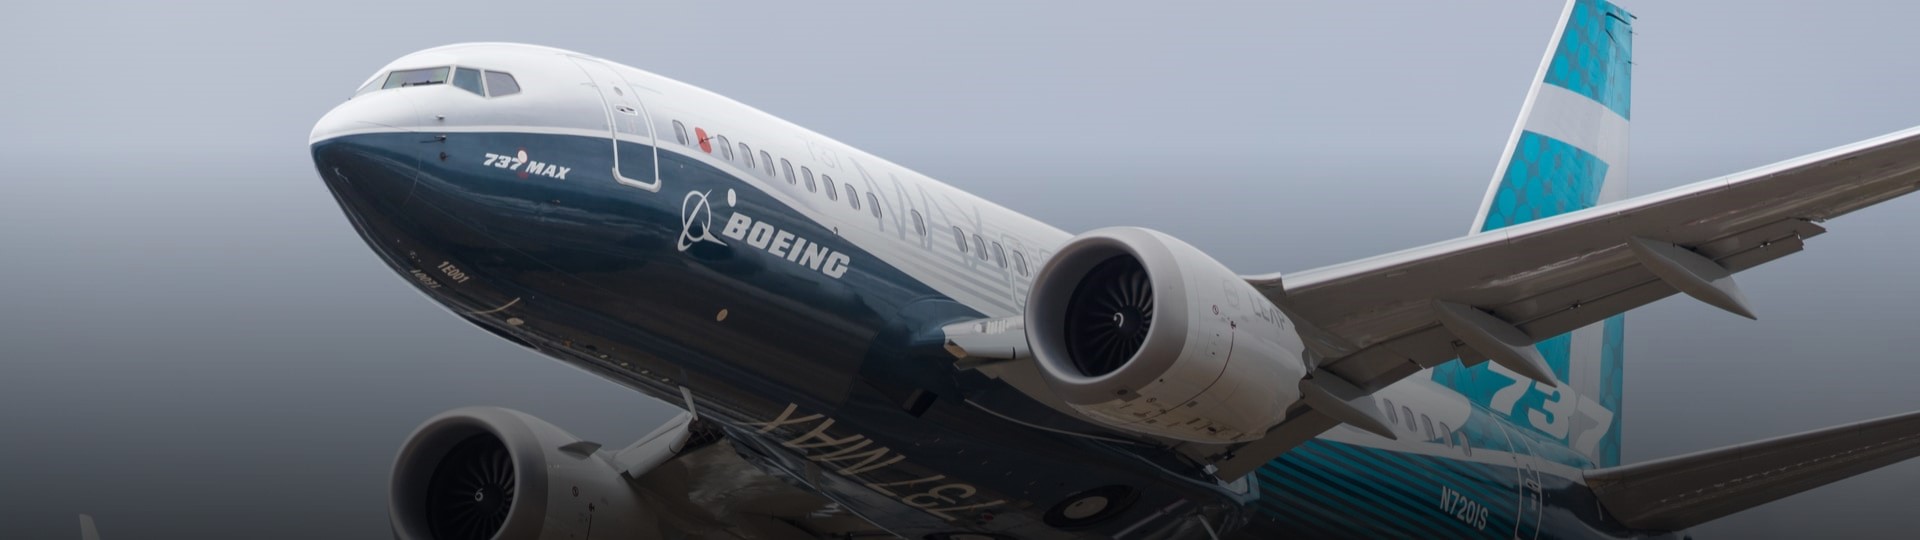 Boeing 737 MAX absolvoval první komerční let s pasažéry